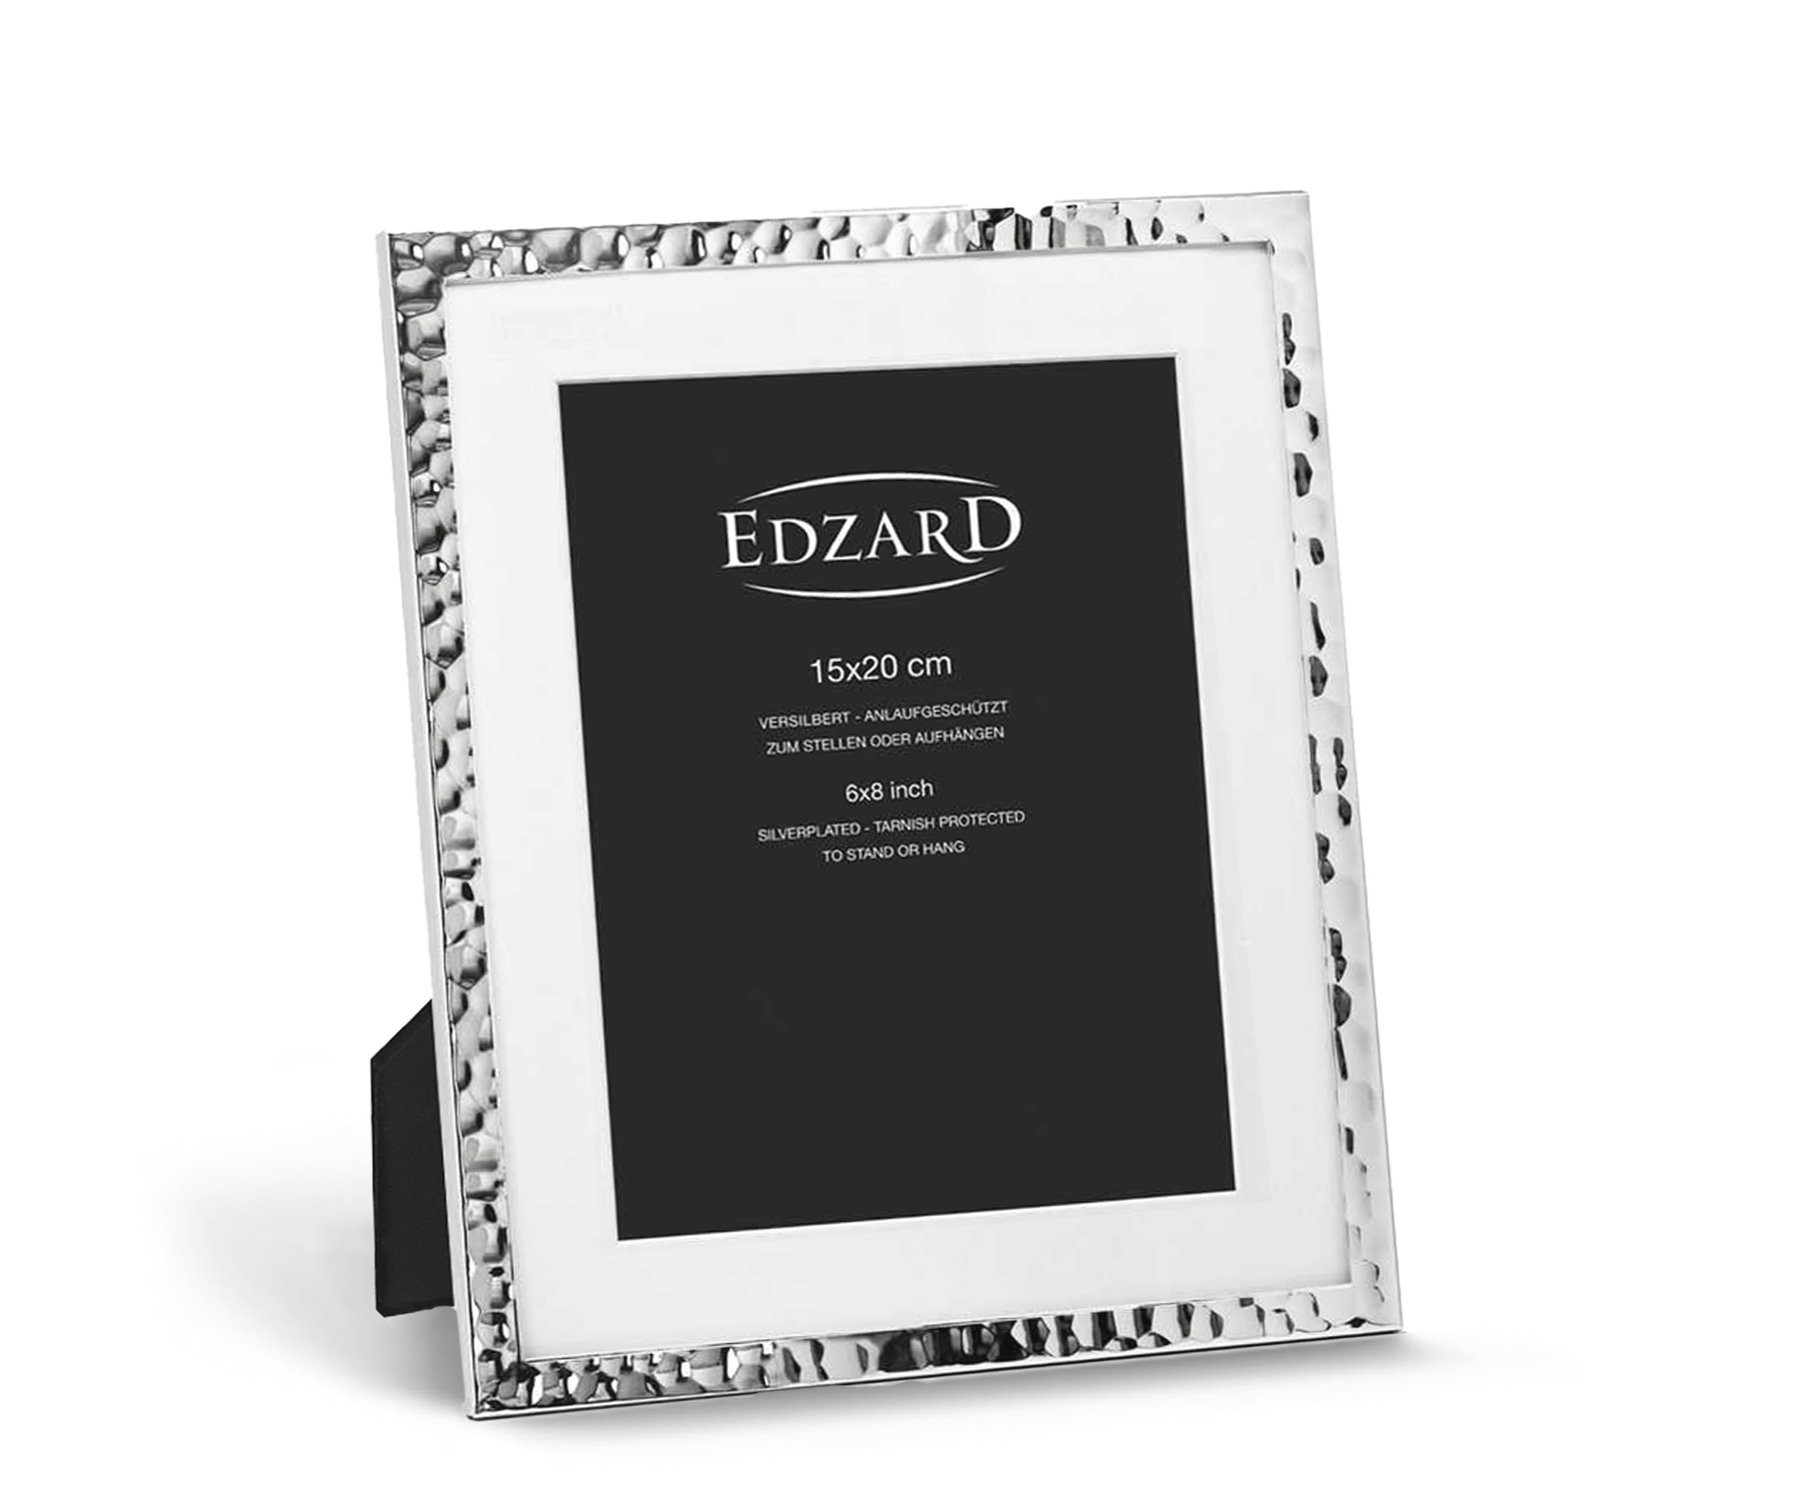 EDZARD Bilderrahmen Fano, versilbert und anlaufgeschützt, für 15x20 cm Bilder – Fotorahmen